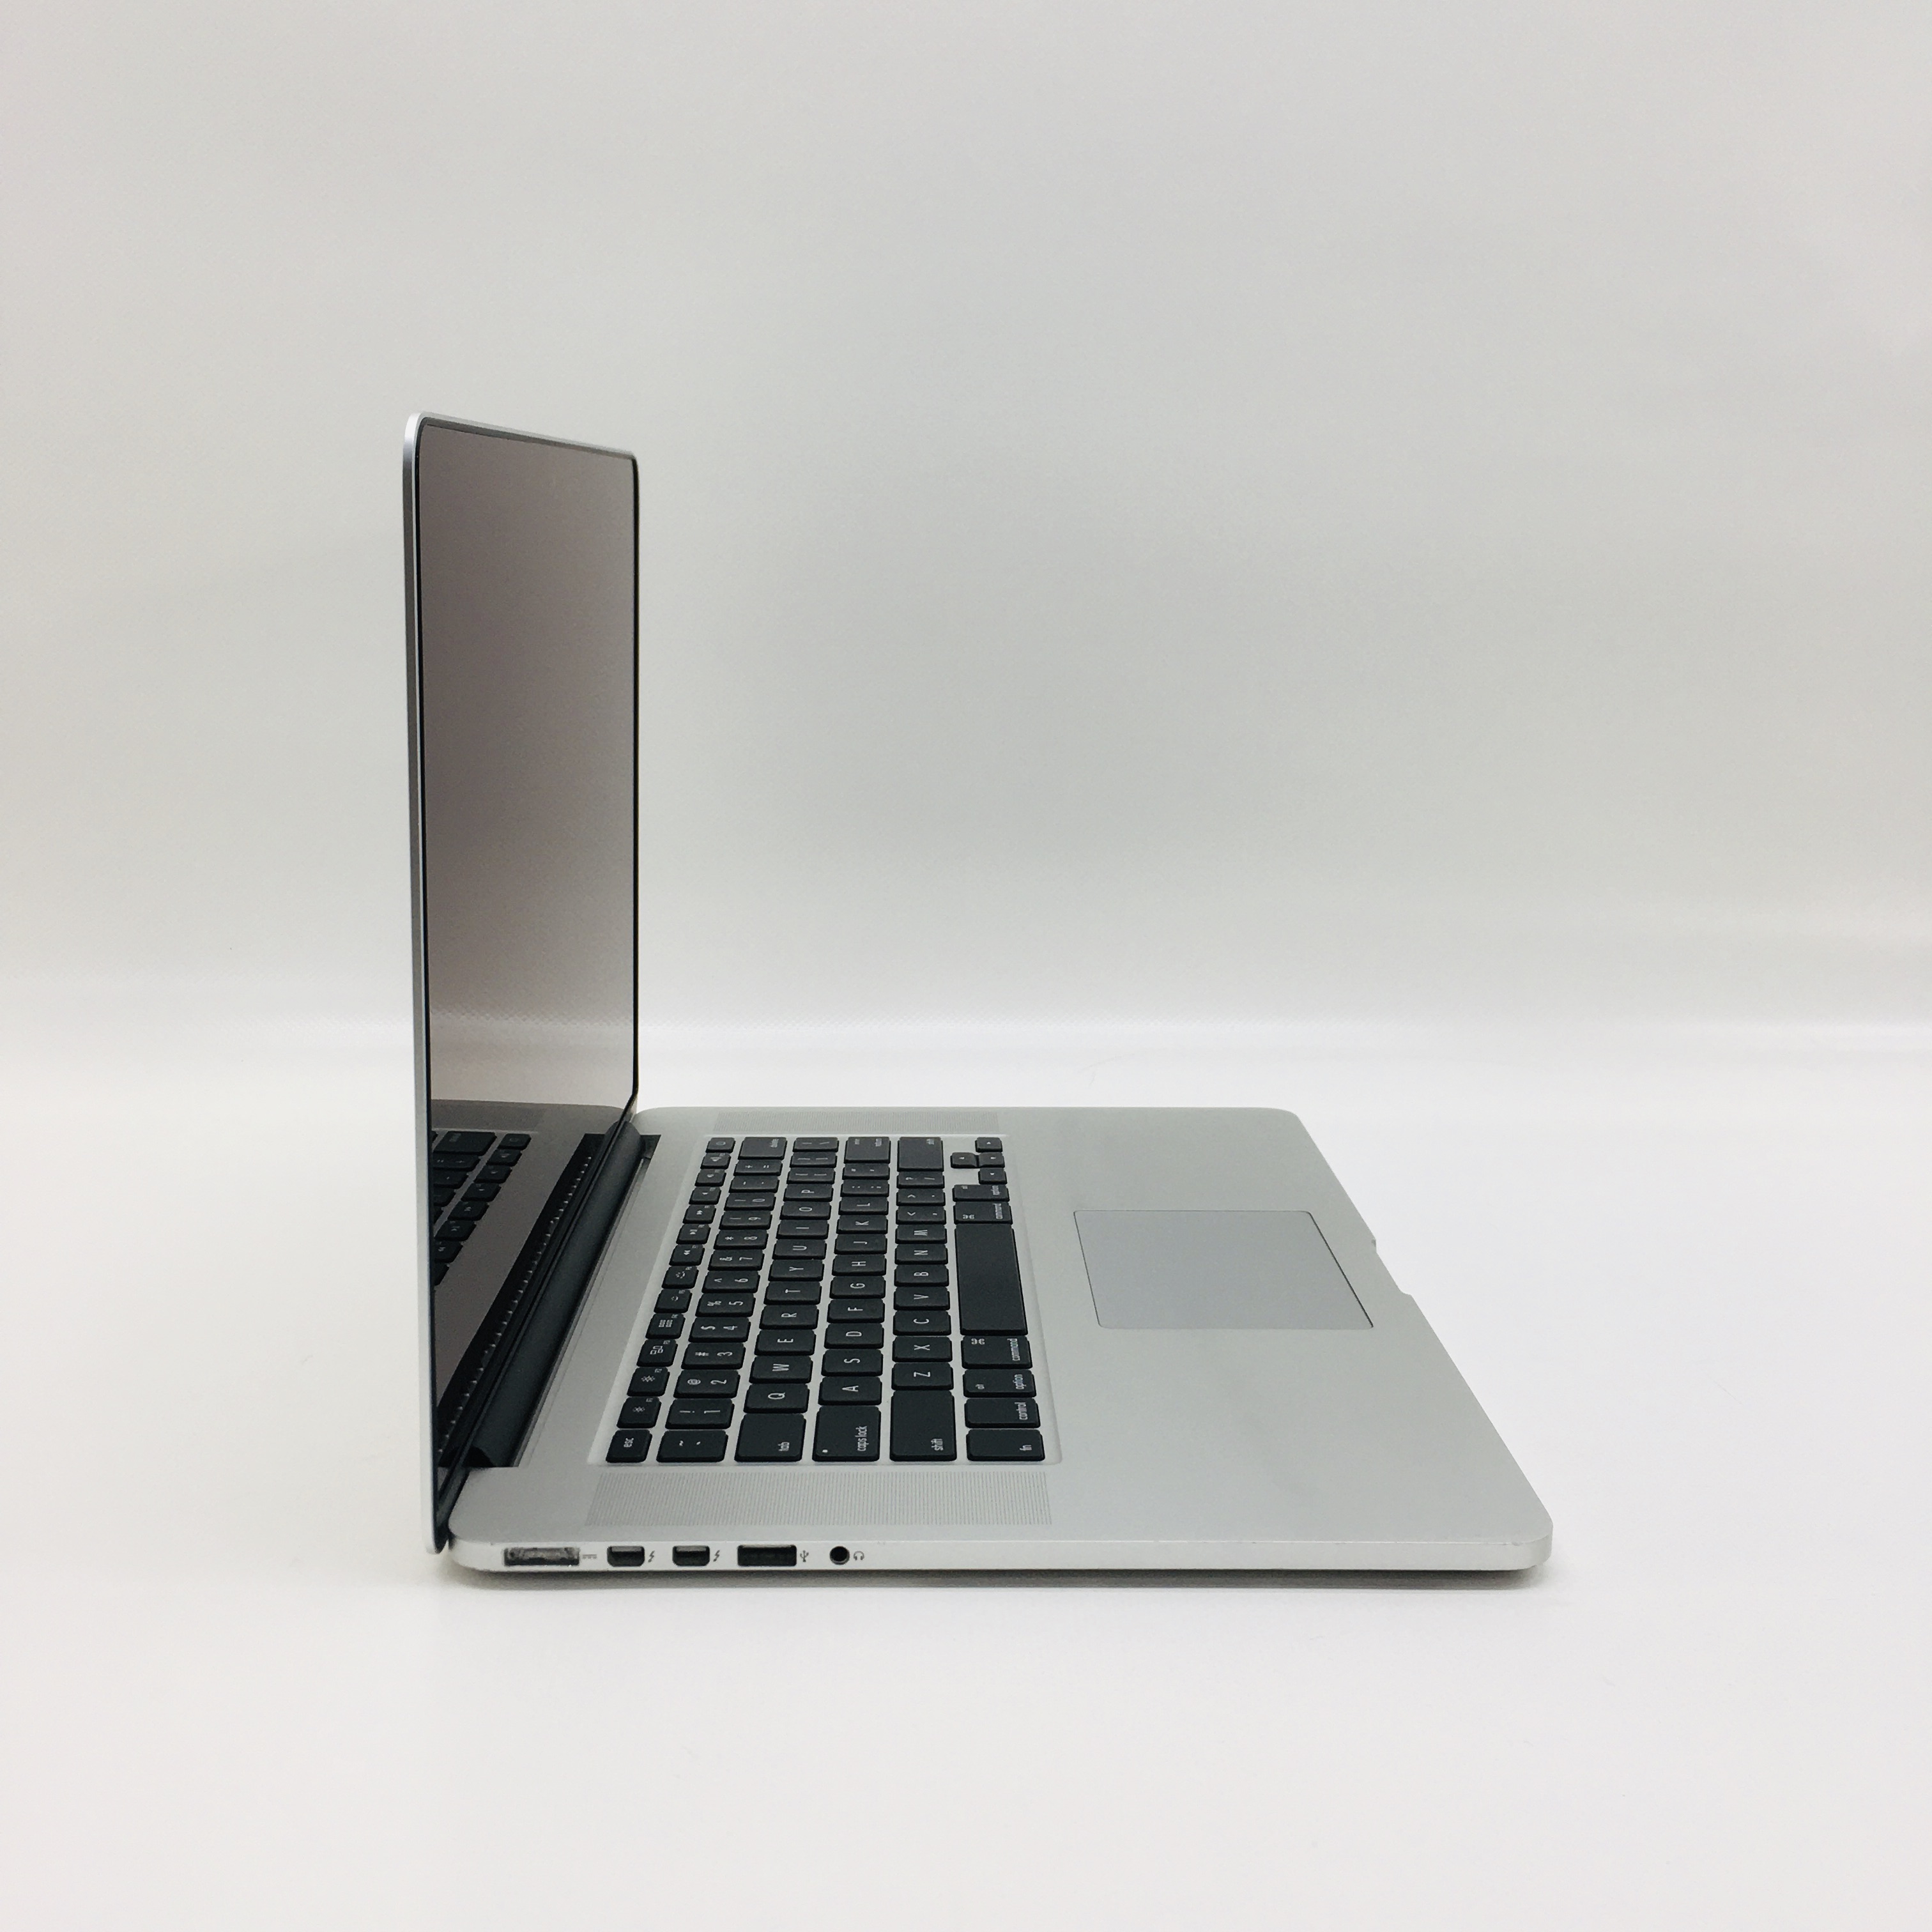 MacBook Pro Retina 15" Mid 2015 (Intel Quad-Core i7 2.5 GHz 16 GB RAM 512 GB SSD), Intel Quad-Core i7 2.5 GHz, 16 GB RAM, 512 GB SSD, image 2